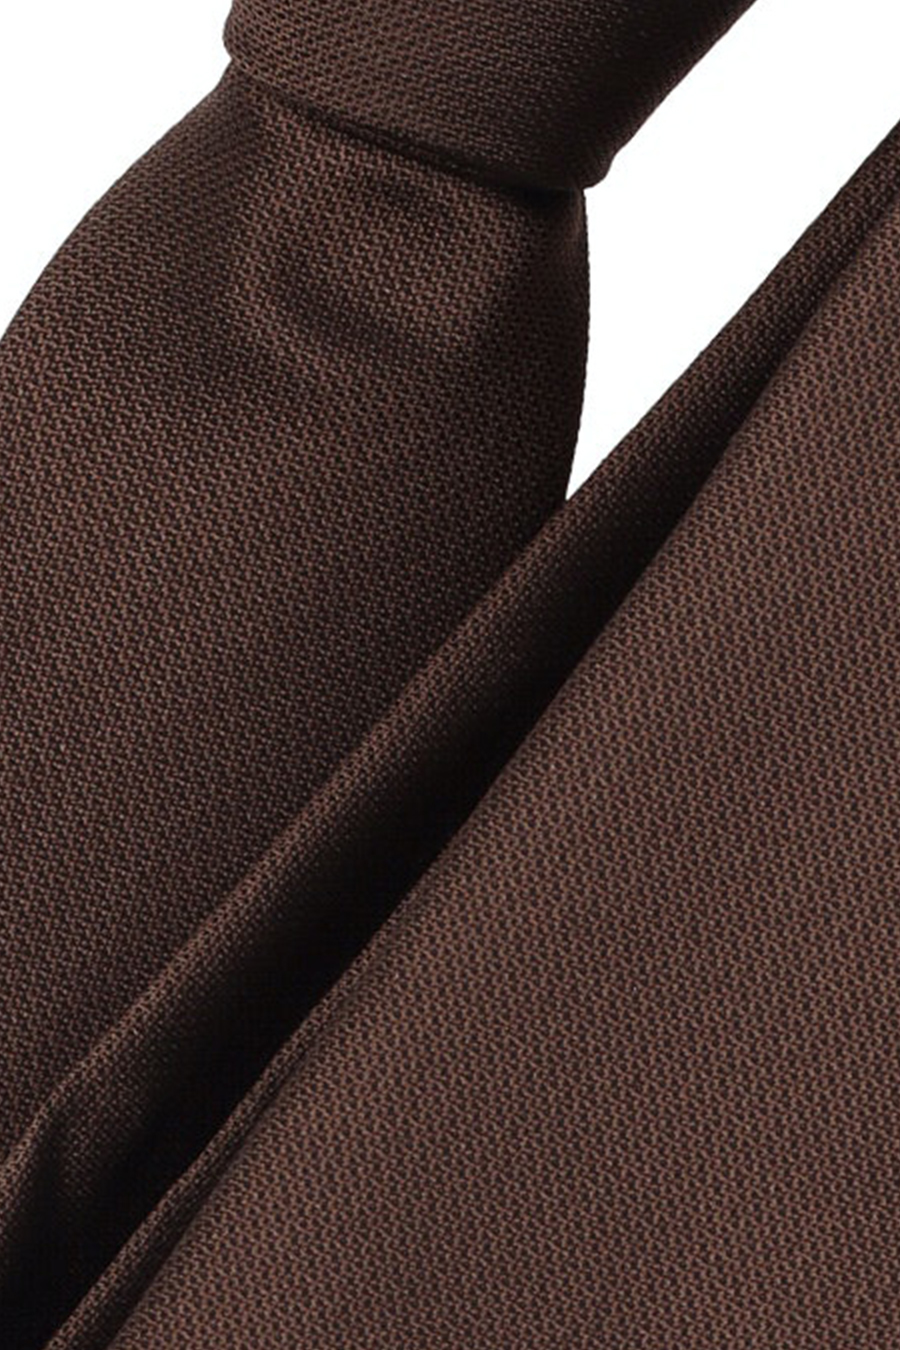 VENTI Krawatte aus Seide und Polyester 5 cm breit braun